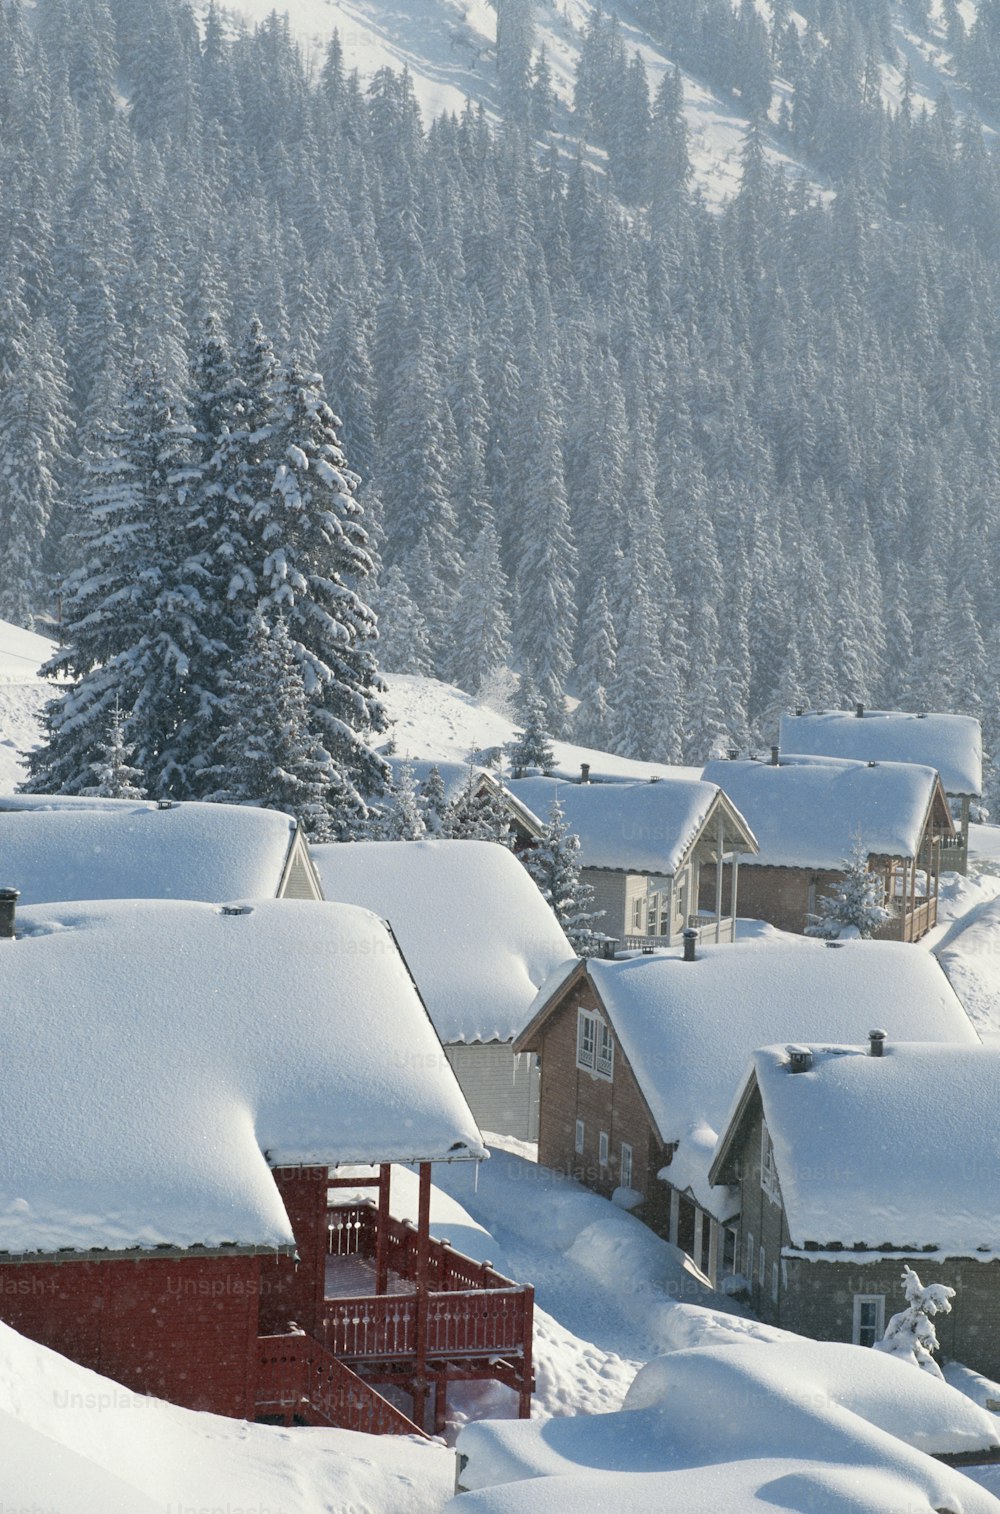 Un grupo de casas cubiertas de nieve con árboles al fondo